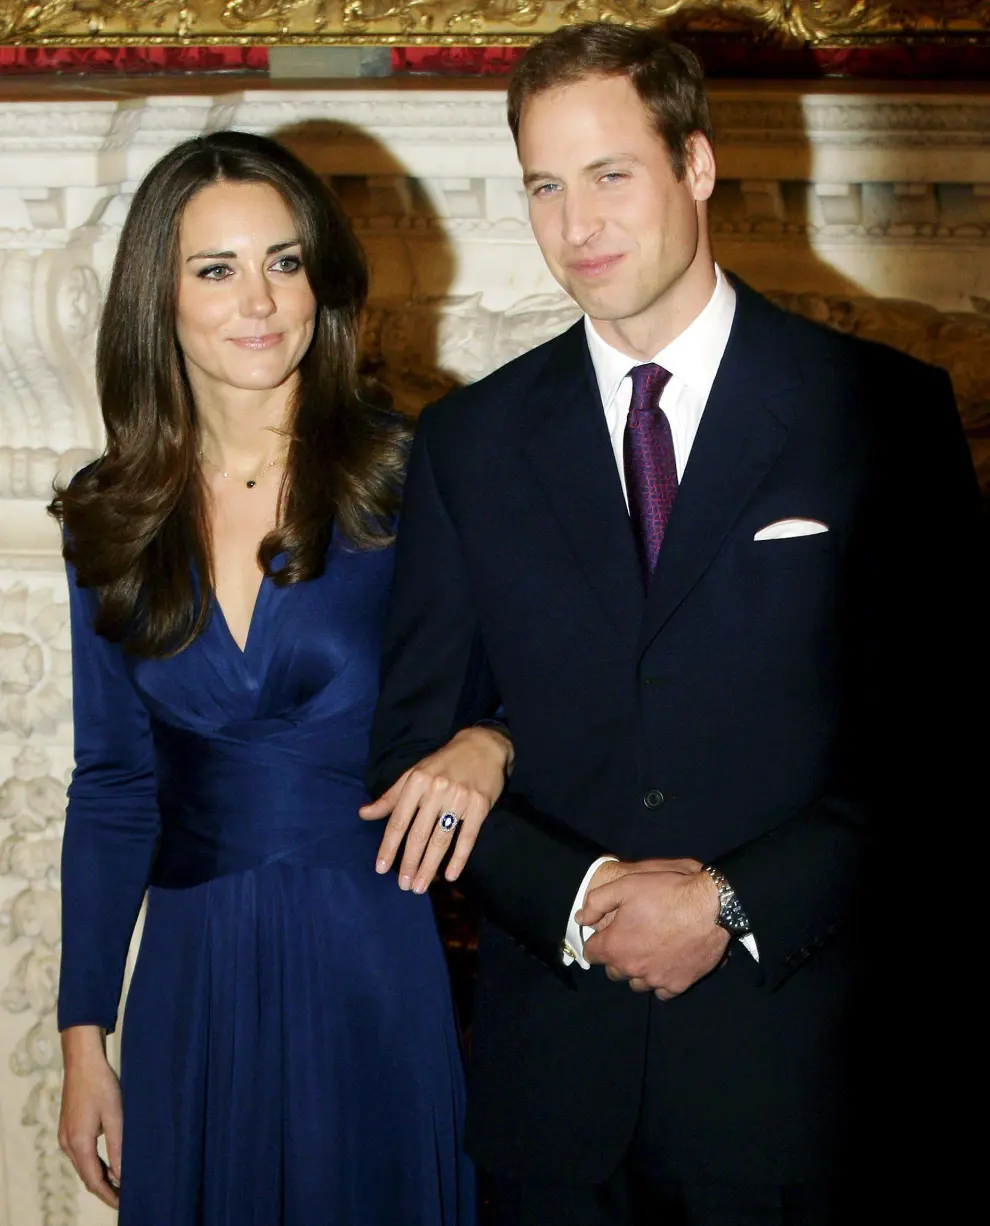 El hermano mayor de Enrique de Inglaterra, el príncipe Guillermo, anunció su boda con Kate Middleton en noviembre de 2010.